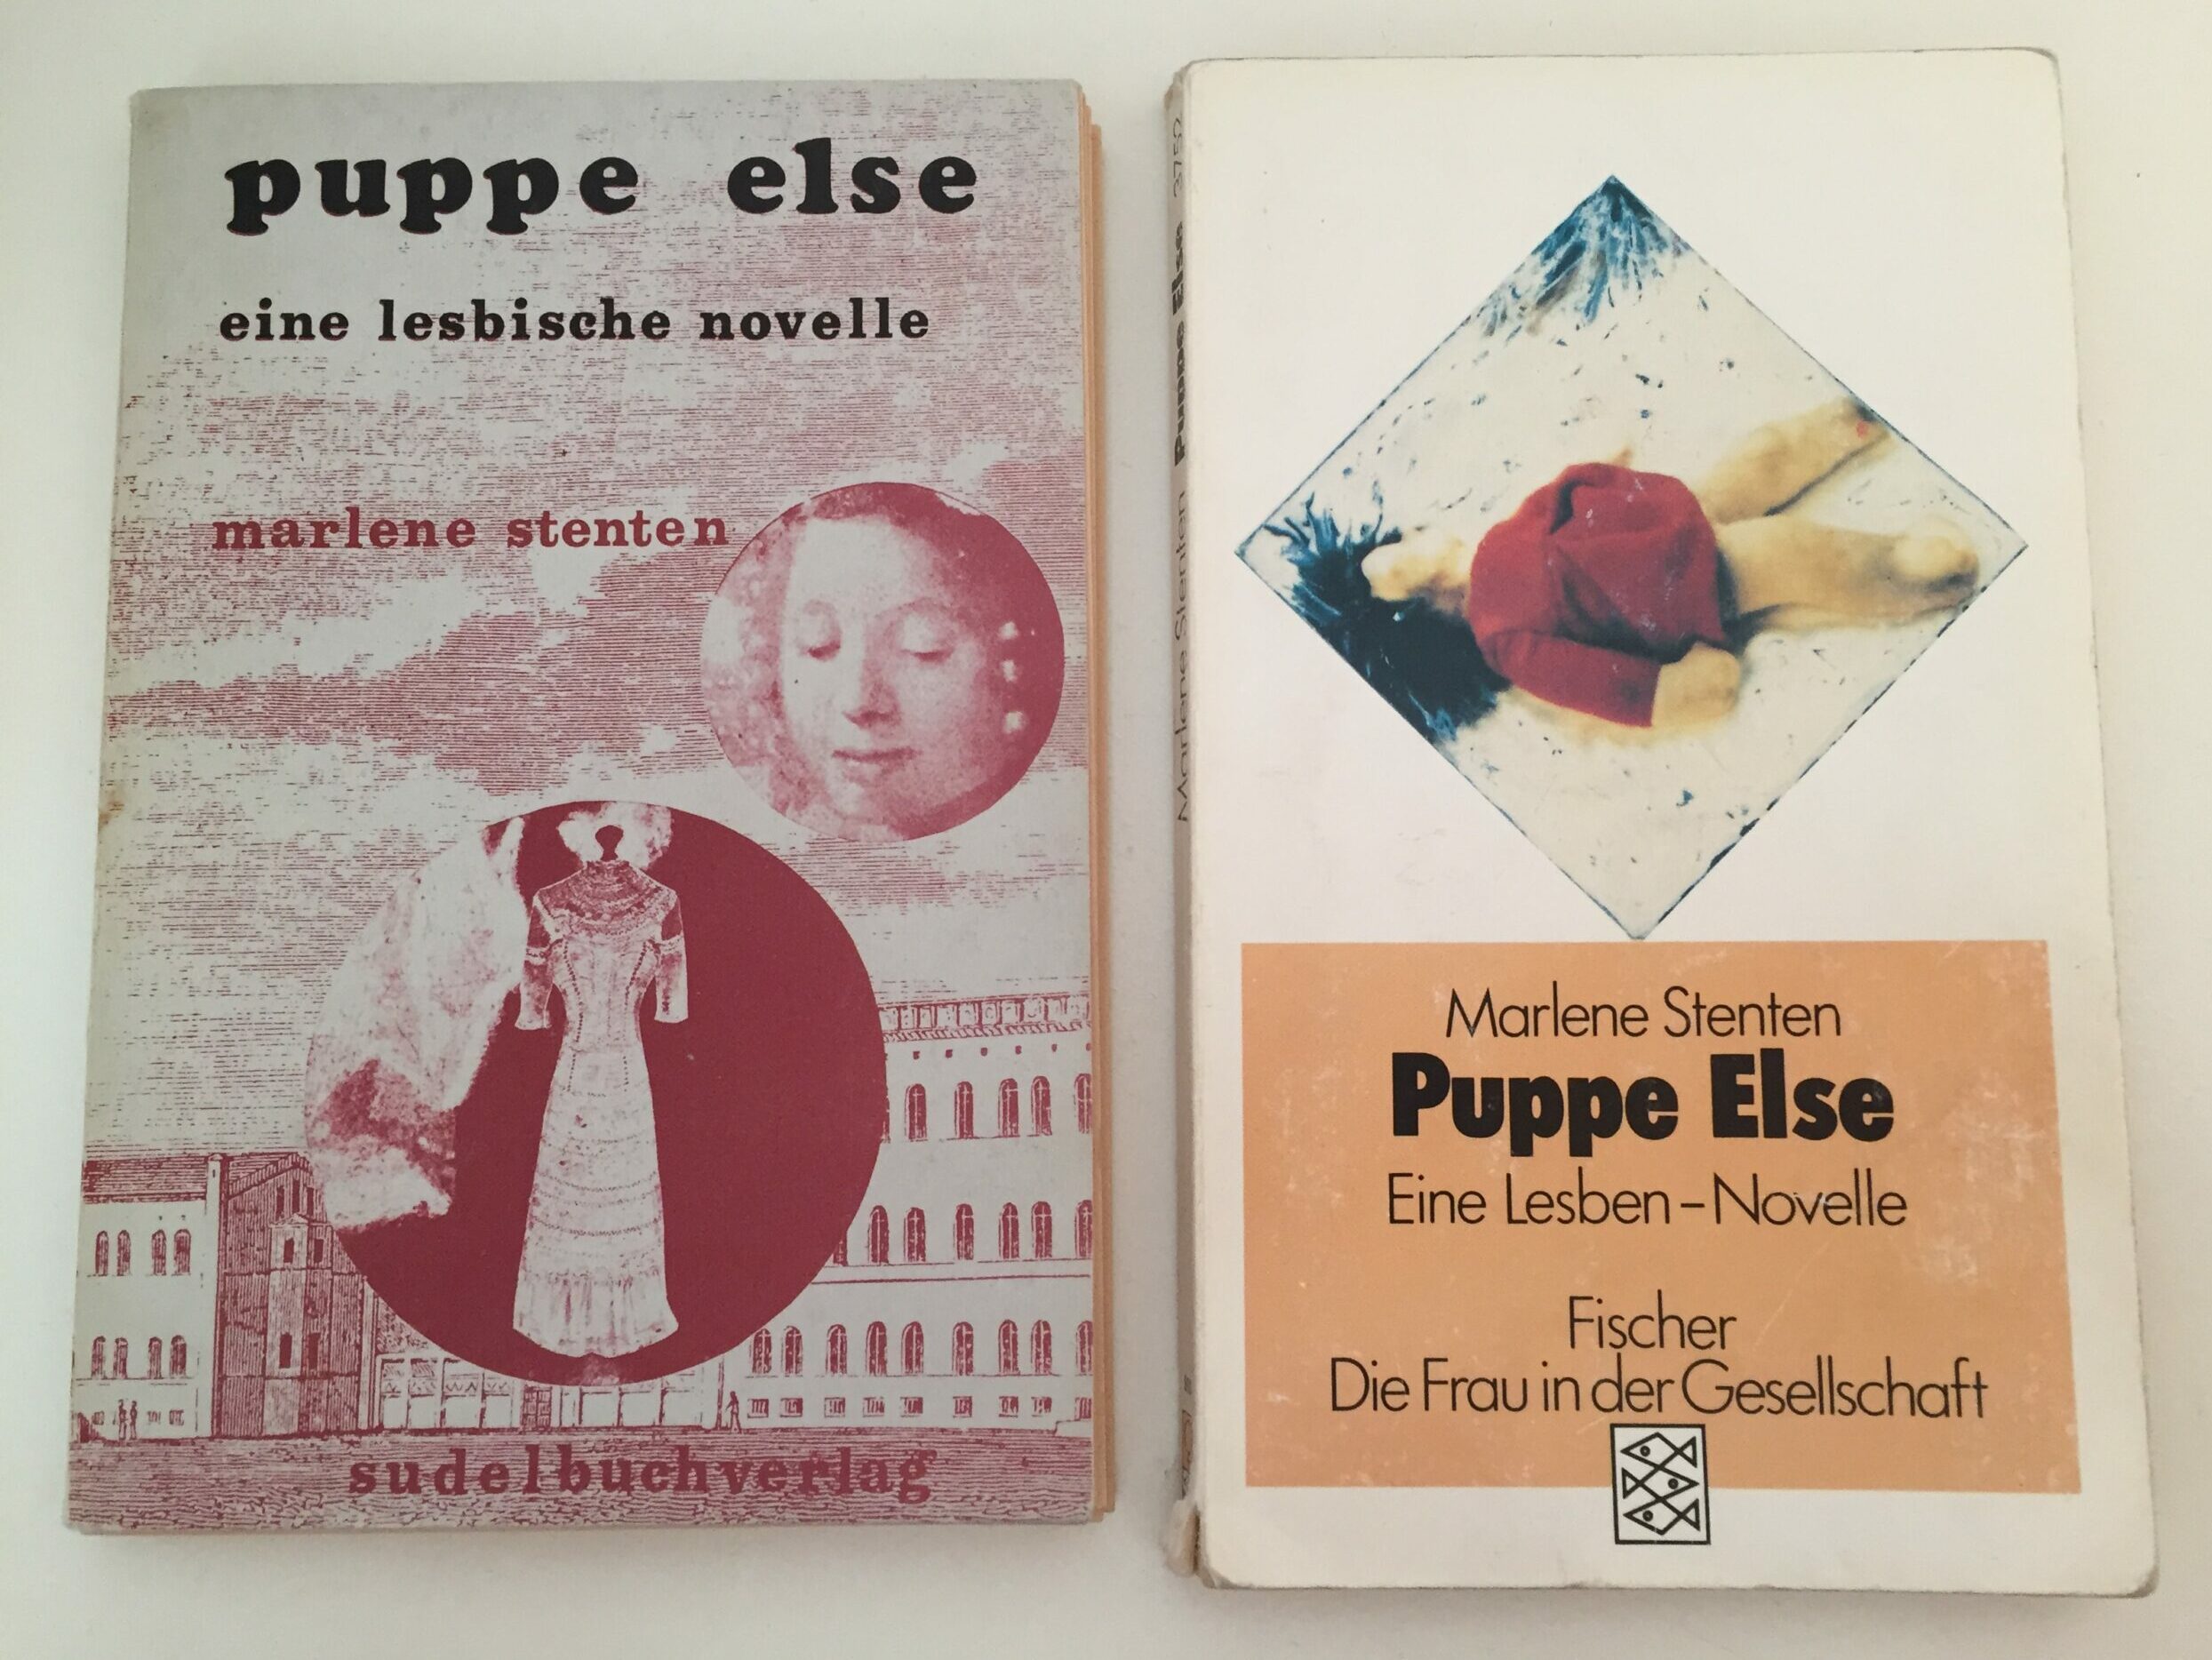 Eigenzeit in Marlene Stentens Puppe Else. Eine Lesben-Novelle (1977)